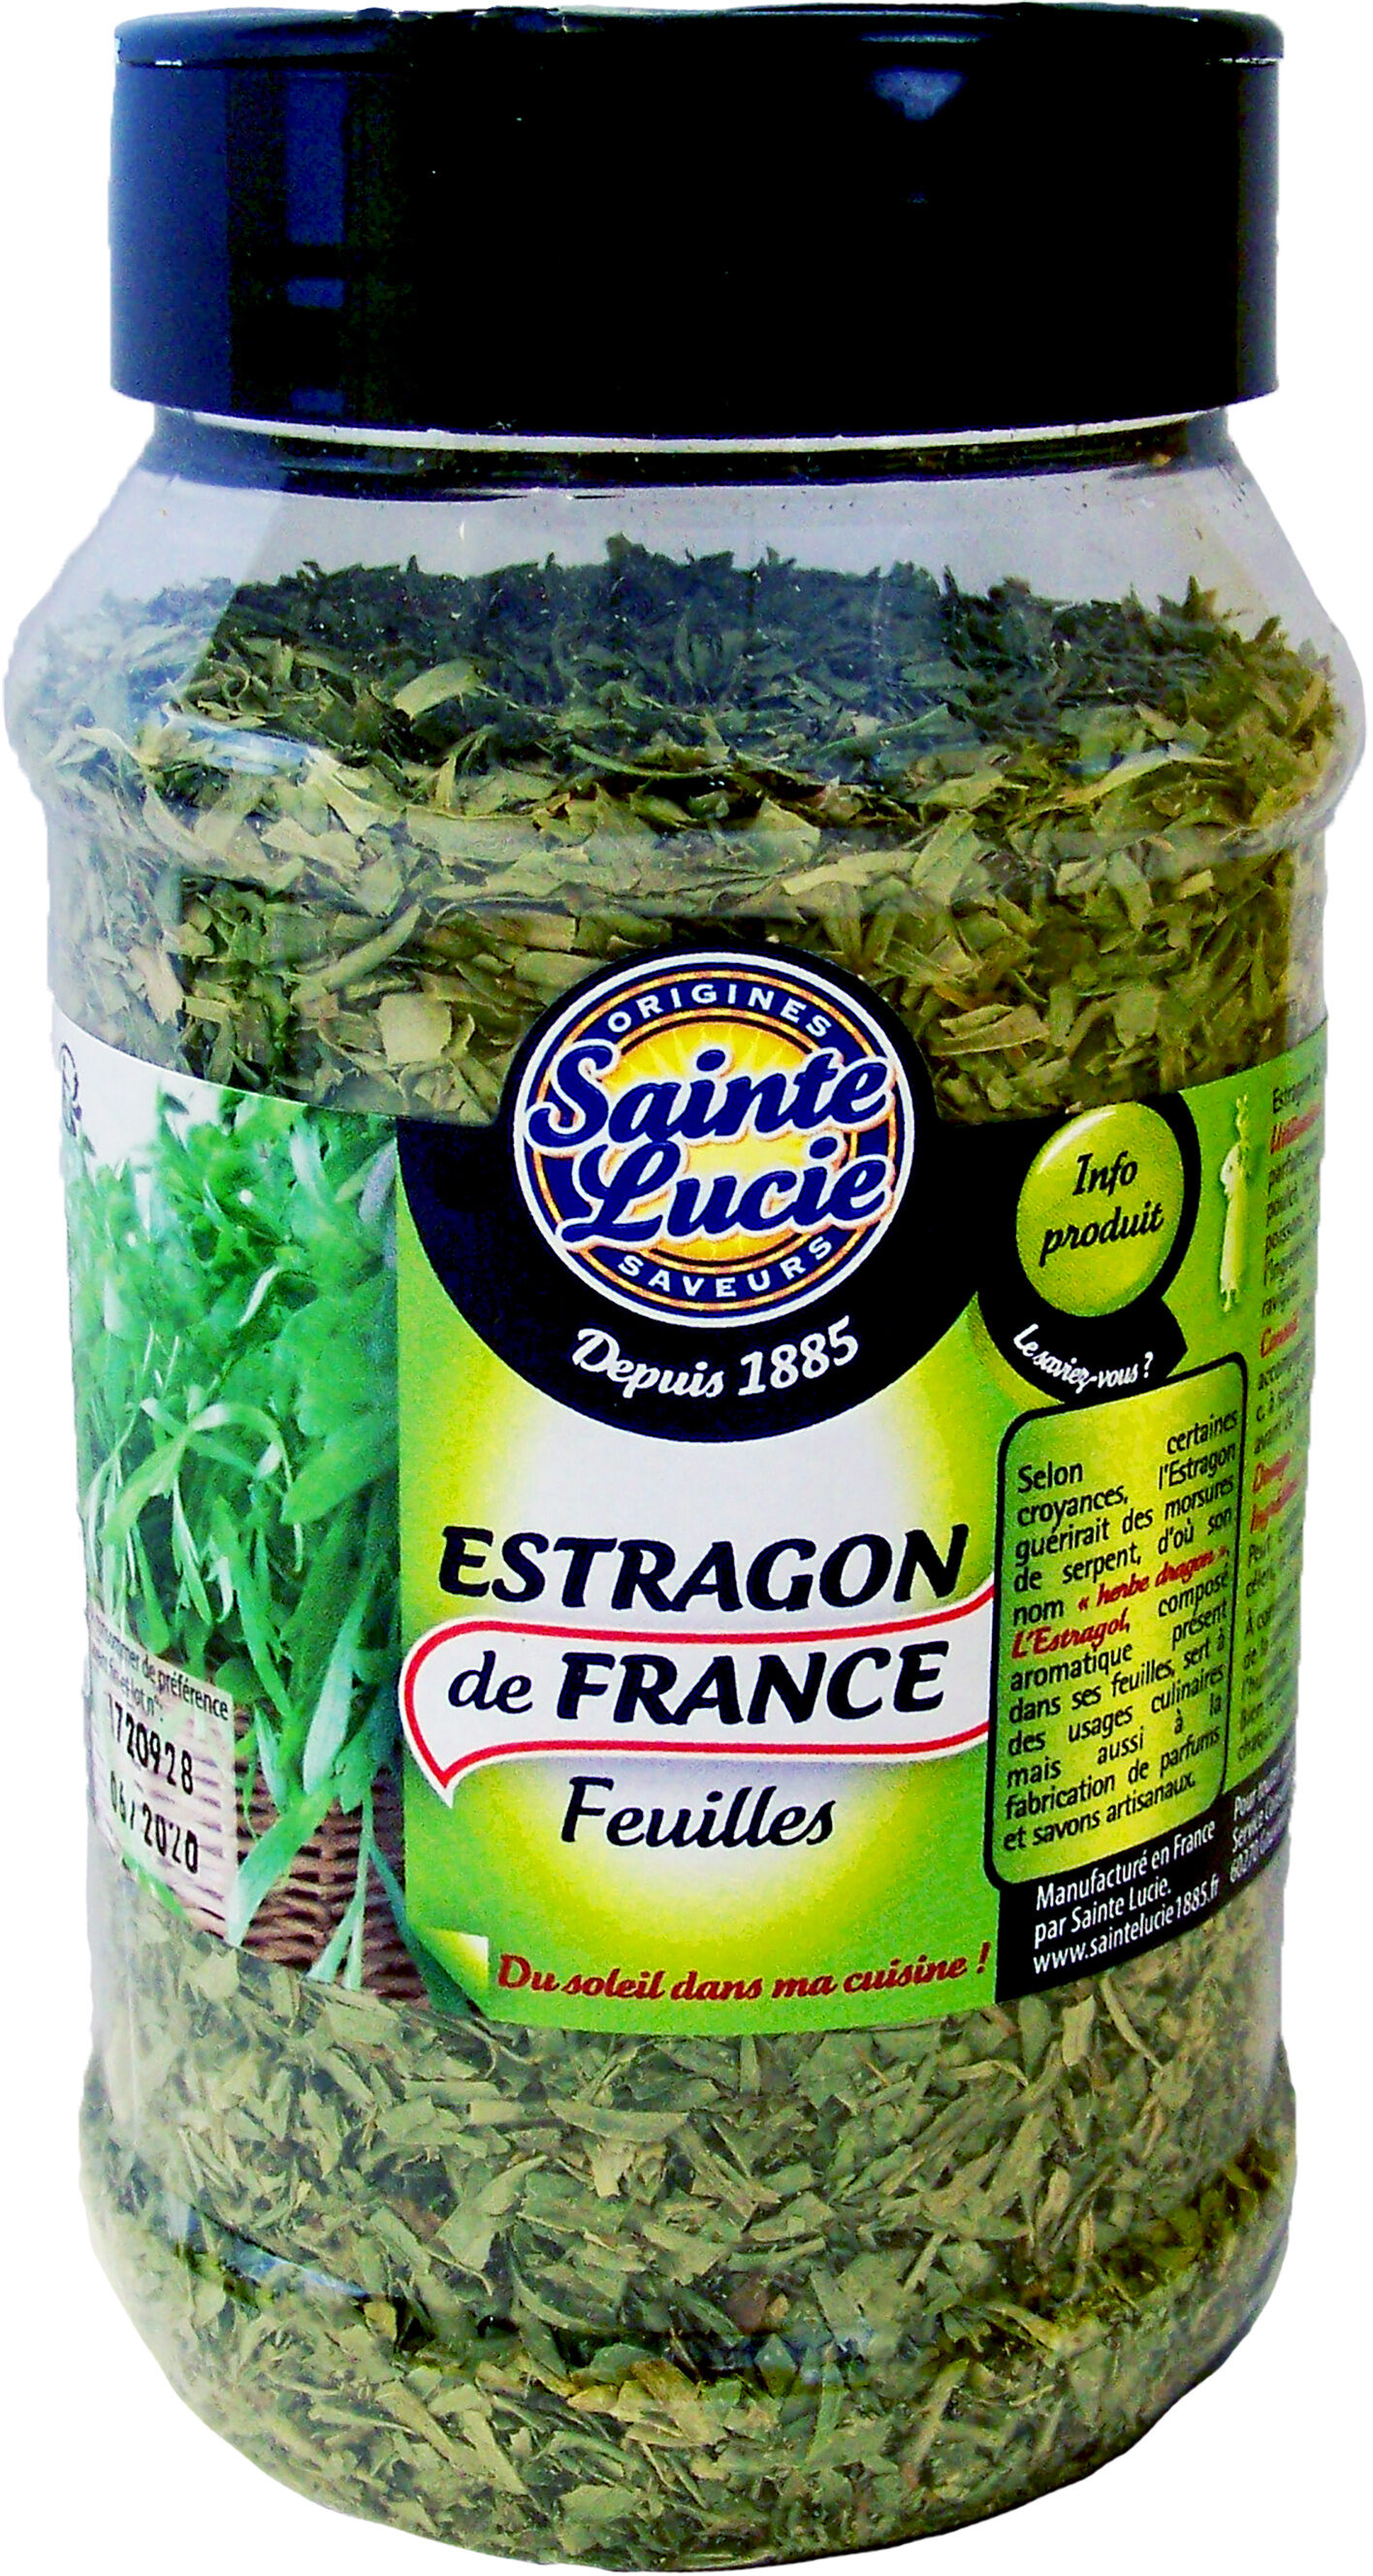 Estragon de France feuilles - Produit